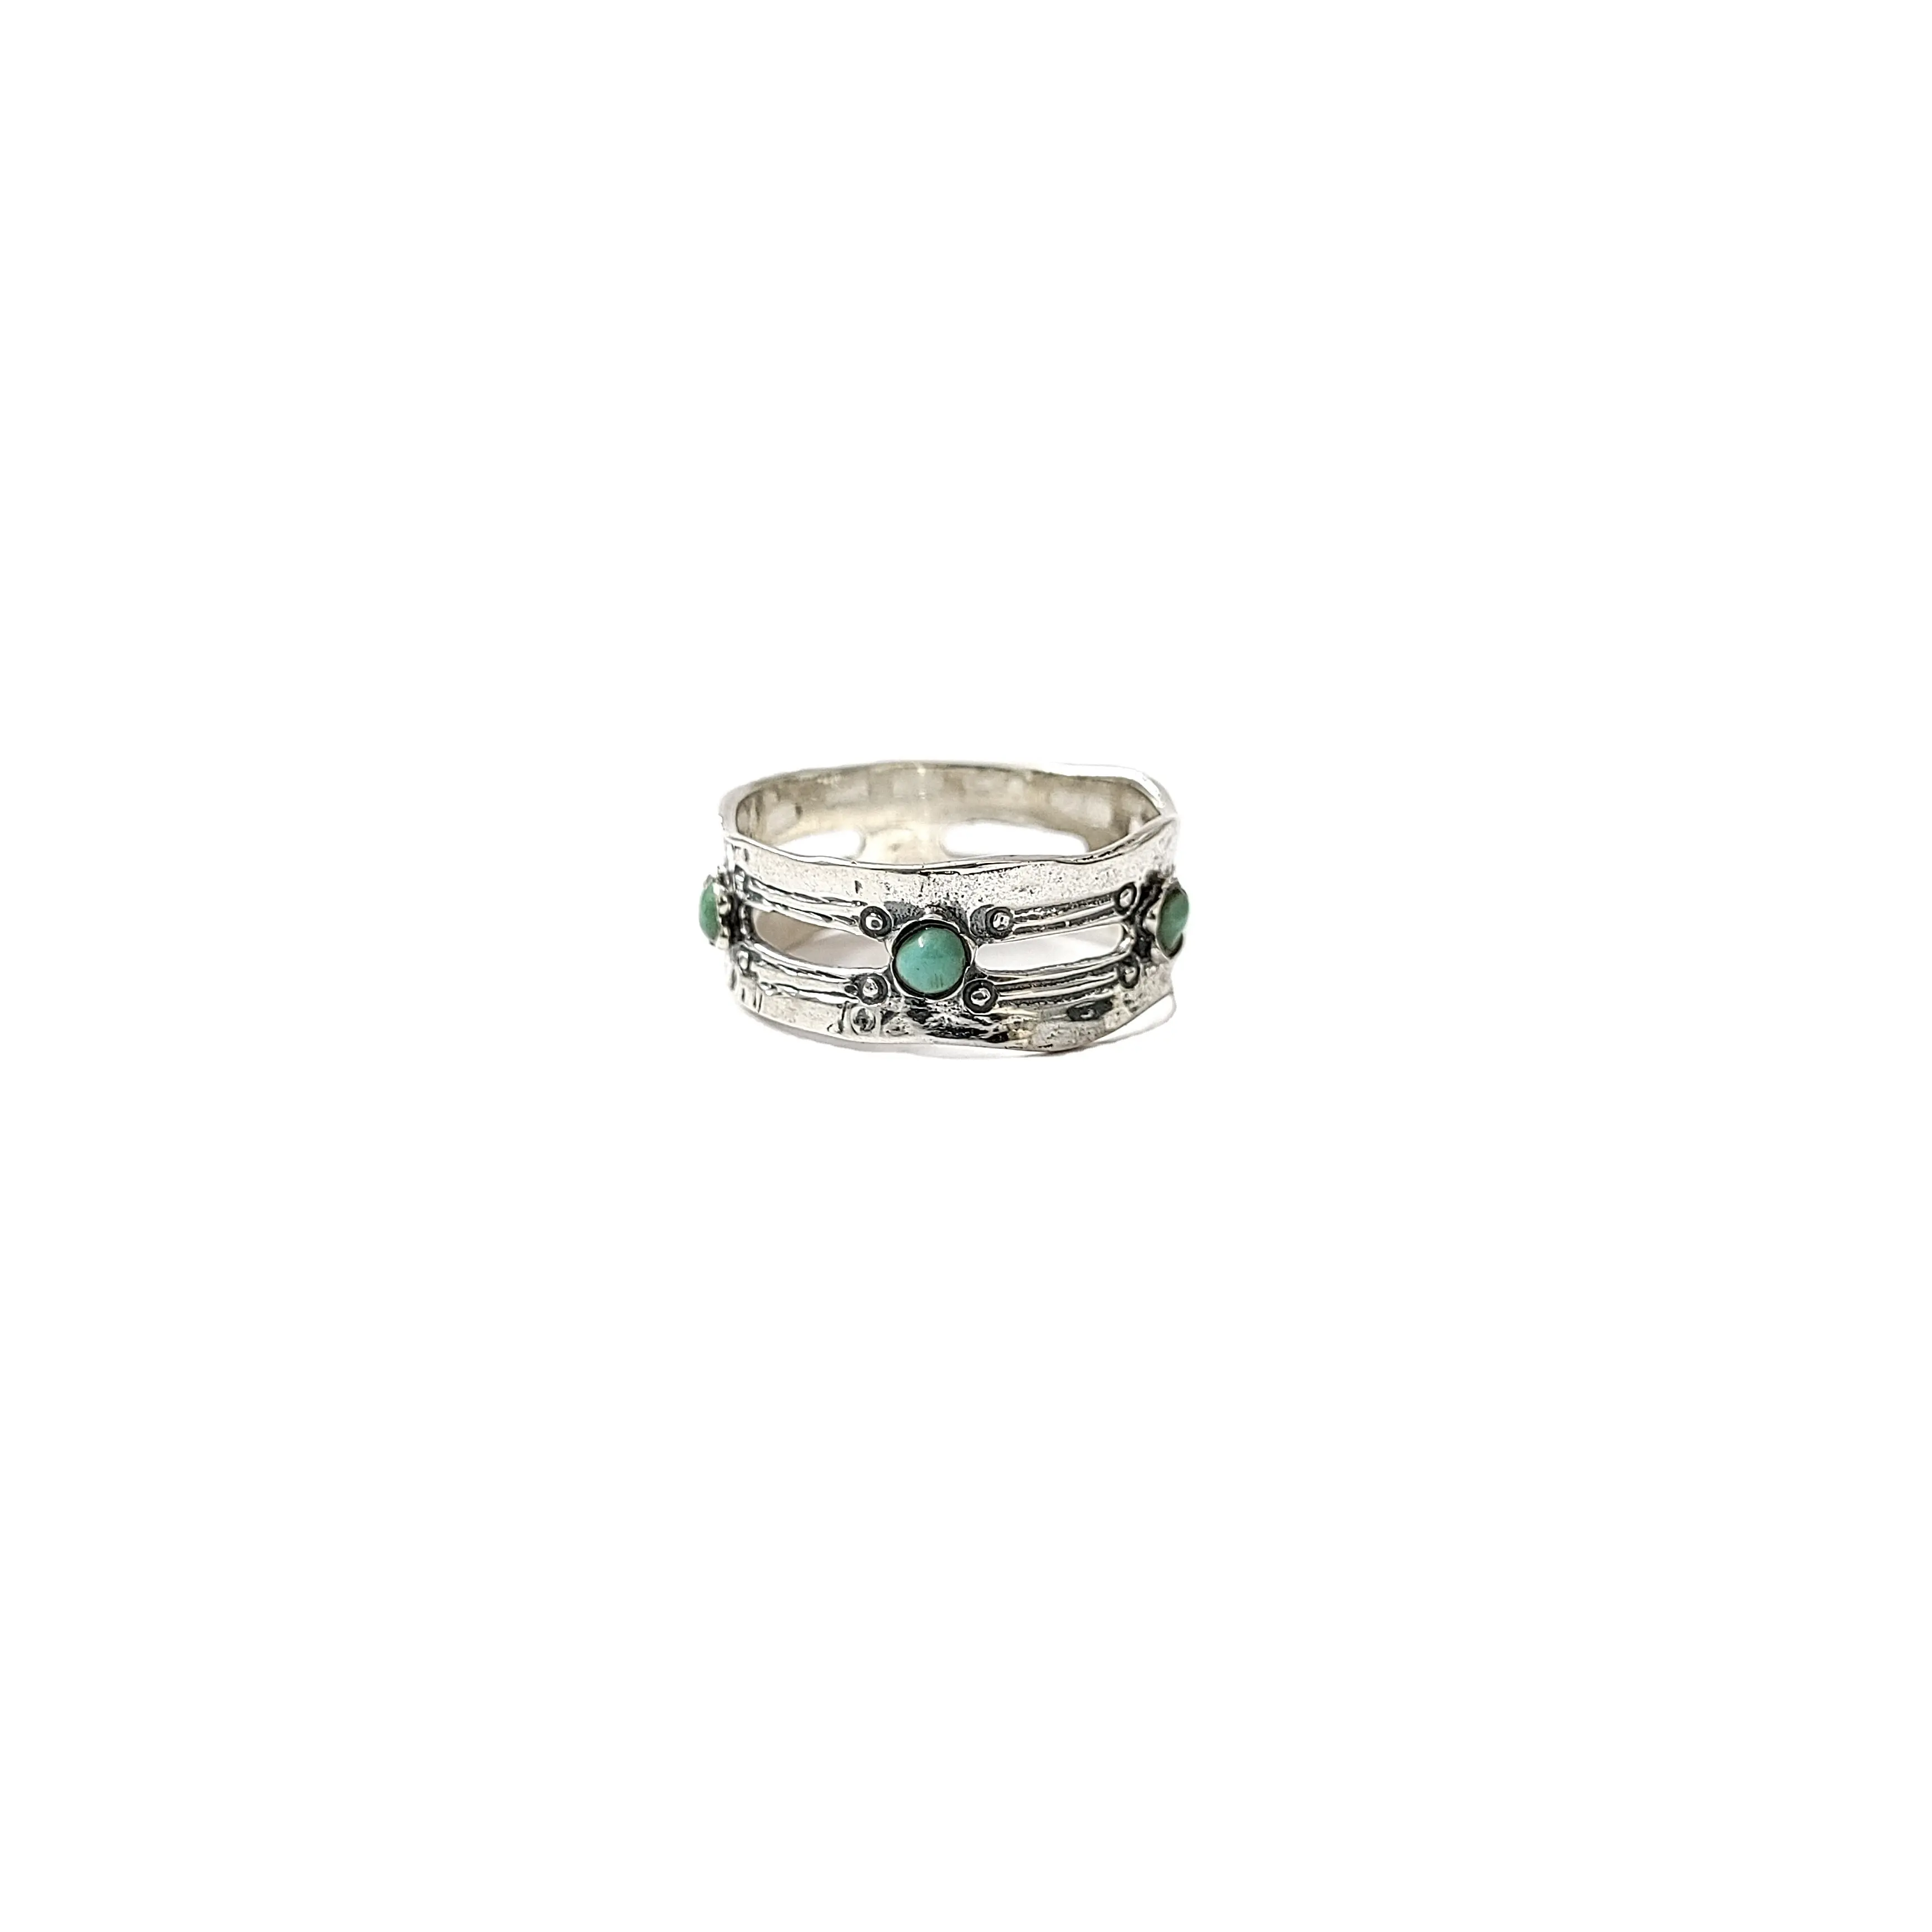 แหวนอัญมณีเทอร์ควอยซ์ที่สวยงามแหวนโบราณที่มีเอกลักษณ์925อัญมณีเงินสเตอร์ลิงคว้าดีลนี้ได้เลย